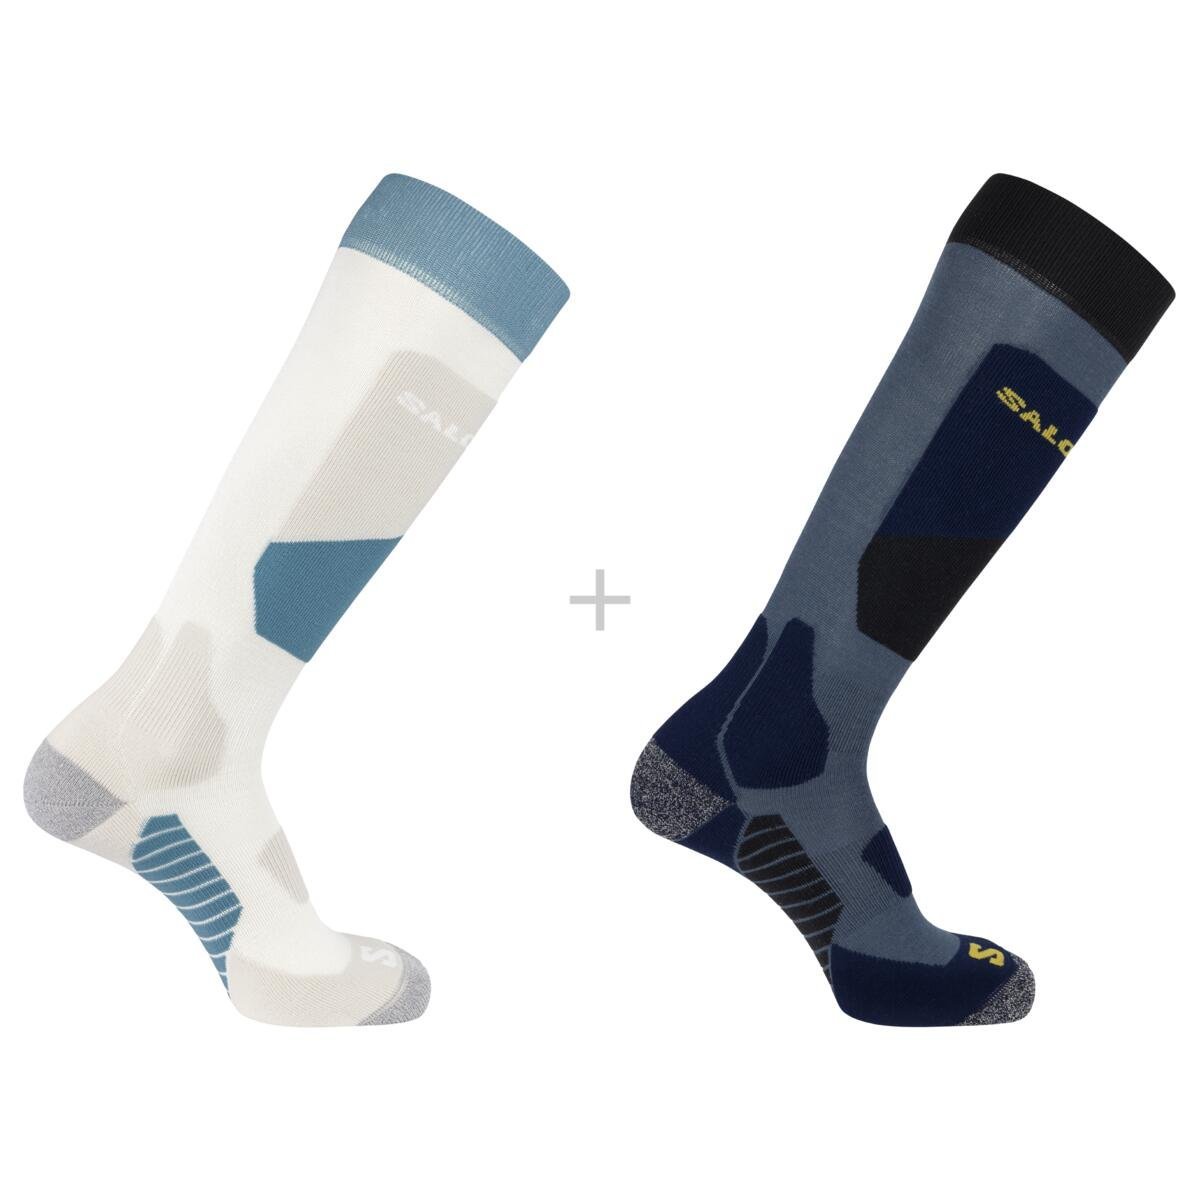 Ponožky Salomon S/Access 2-Pack - modré/biele